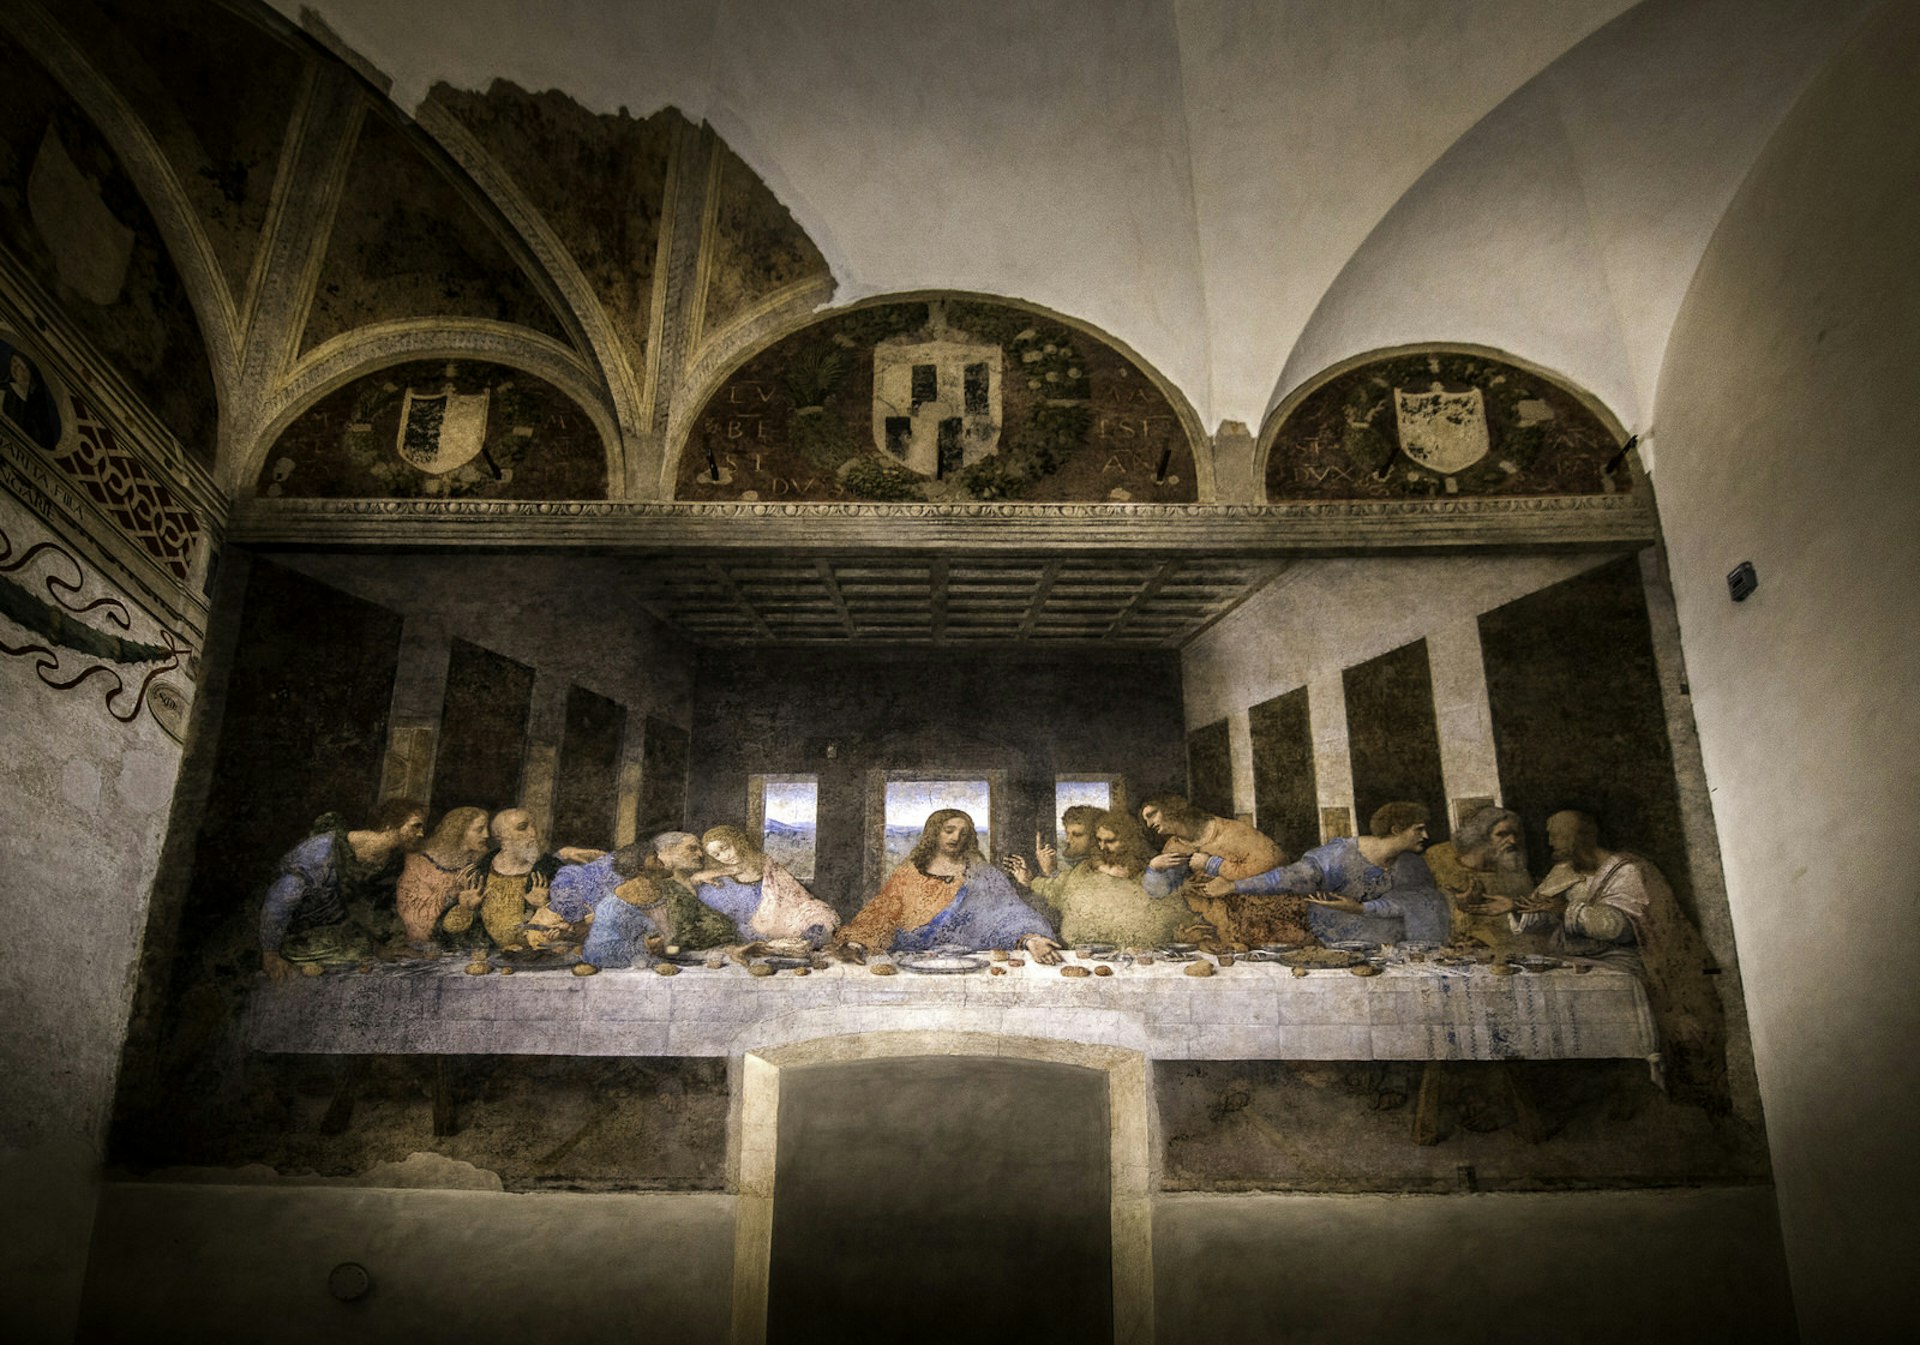 Leonardo Da Vinci's The Last Supper in the Santa Maria delle Grazie in Milan, Italy